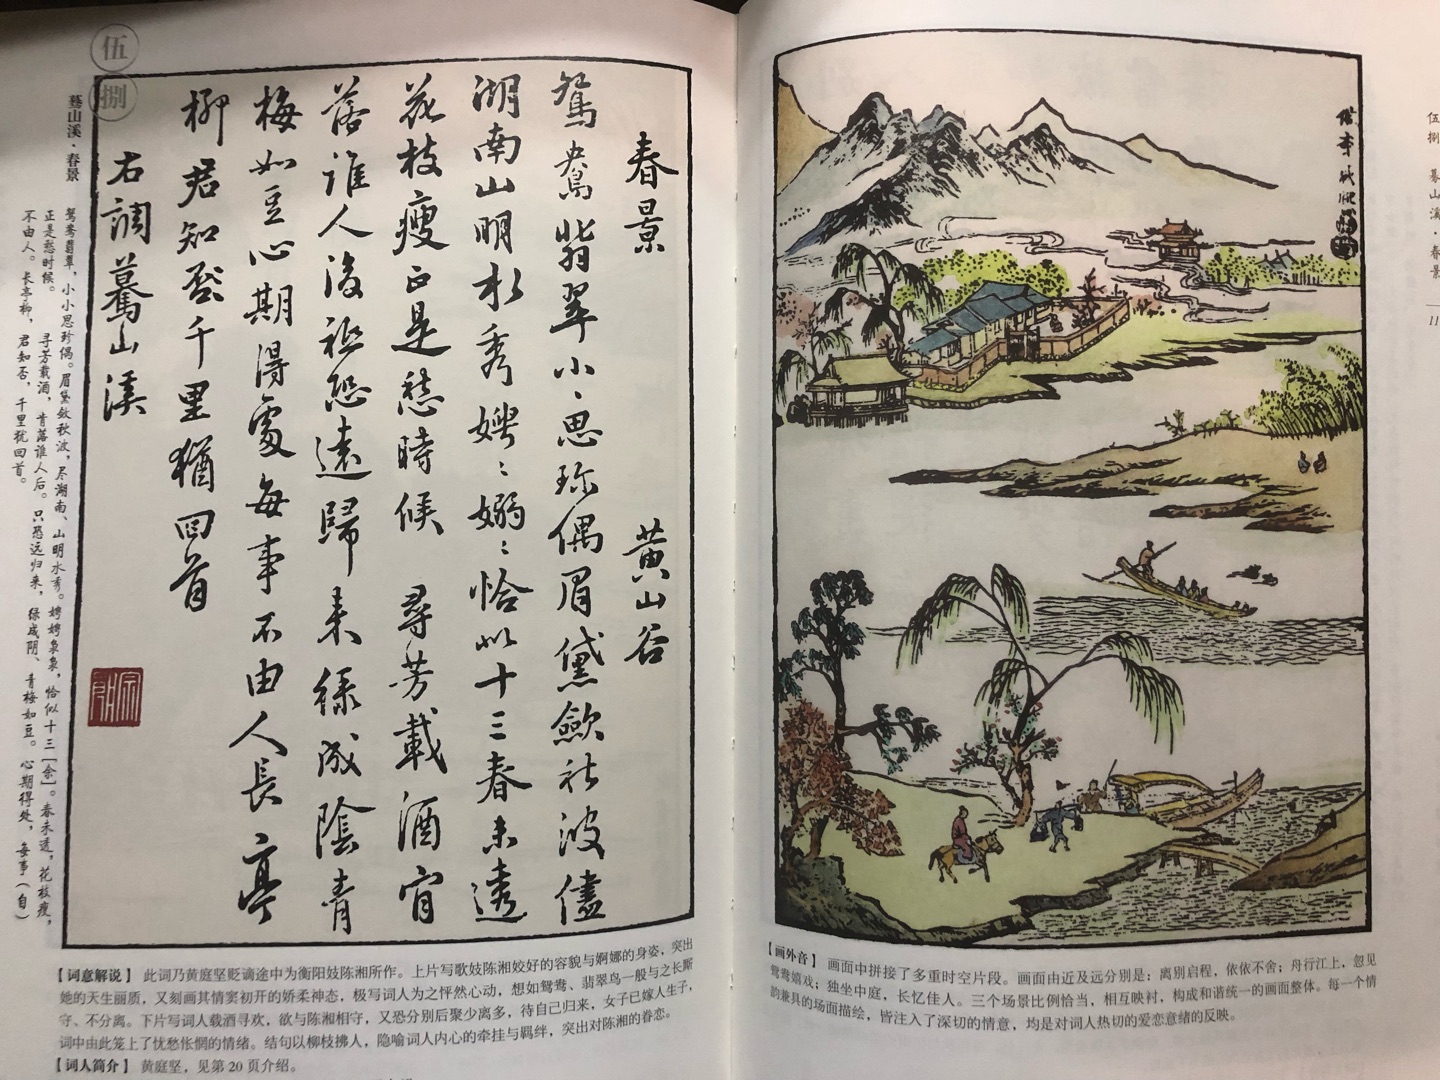 漂亮的字漂亮的画，我买的16K的，大一点看起来清楚，临摹起来方便，书法旁边是简体中文，但也是书法，下面是词意、词作者和书者介绍，画的下面是画意解读，一举多得